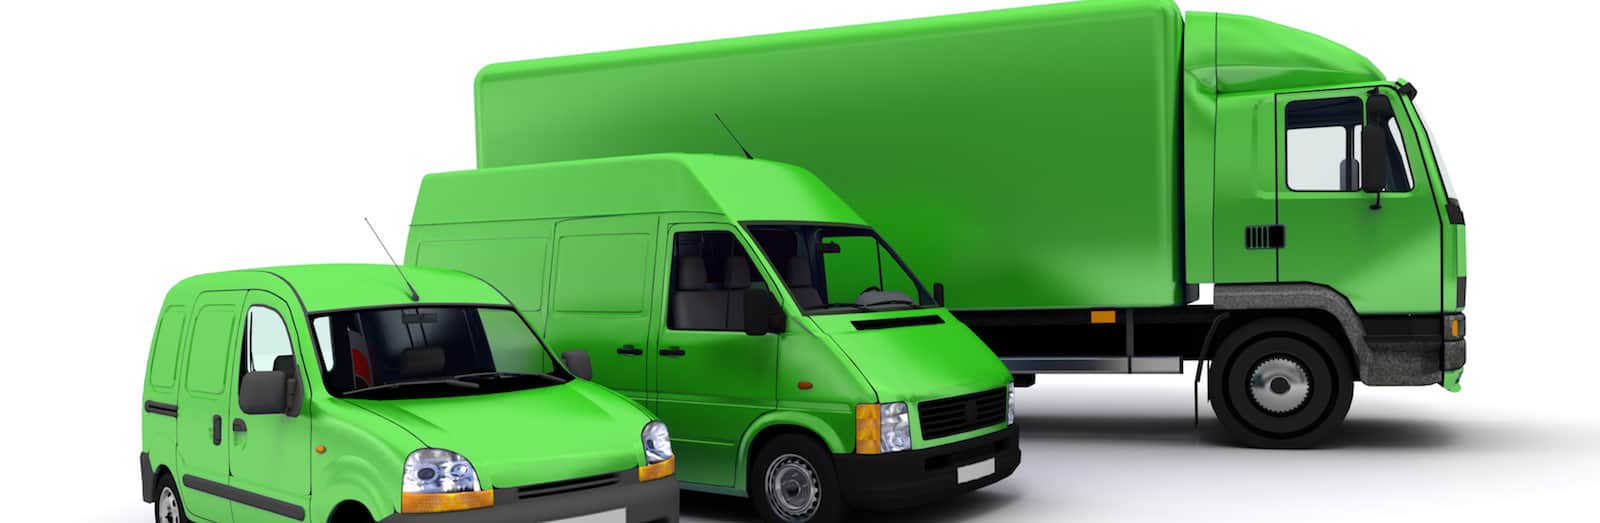 green fleet management, freight